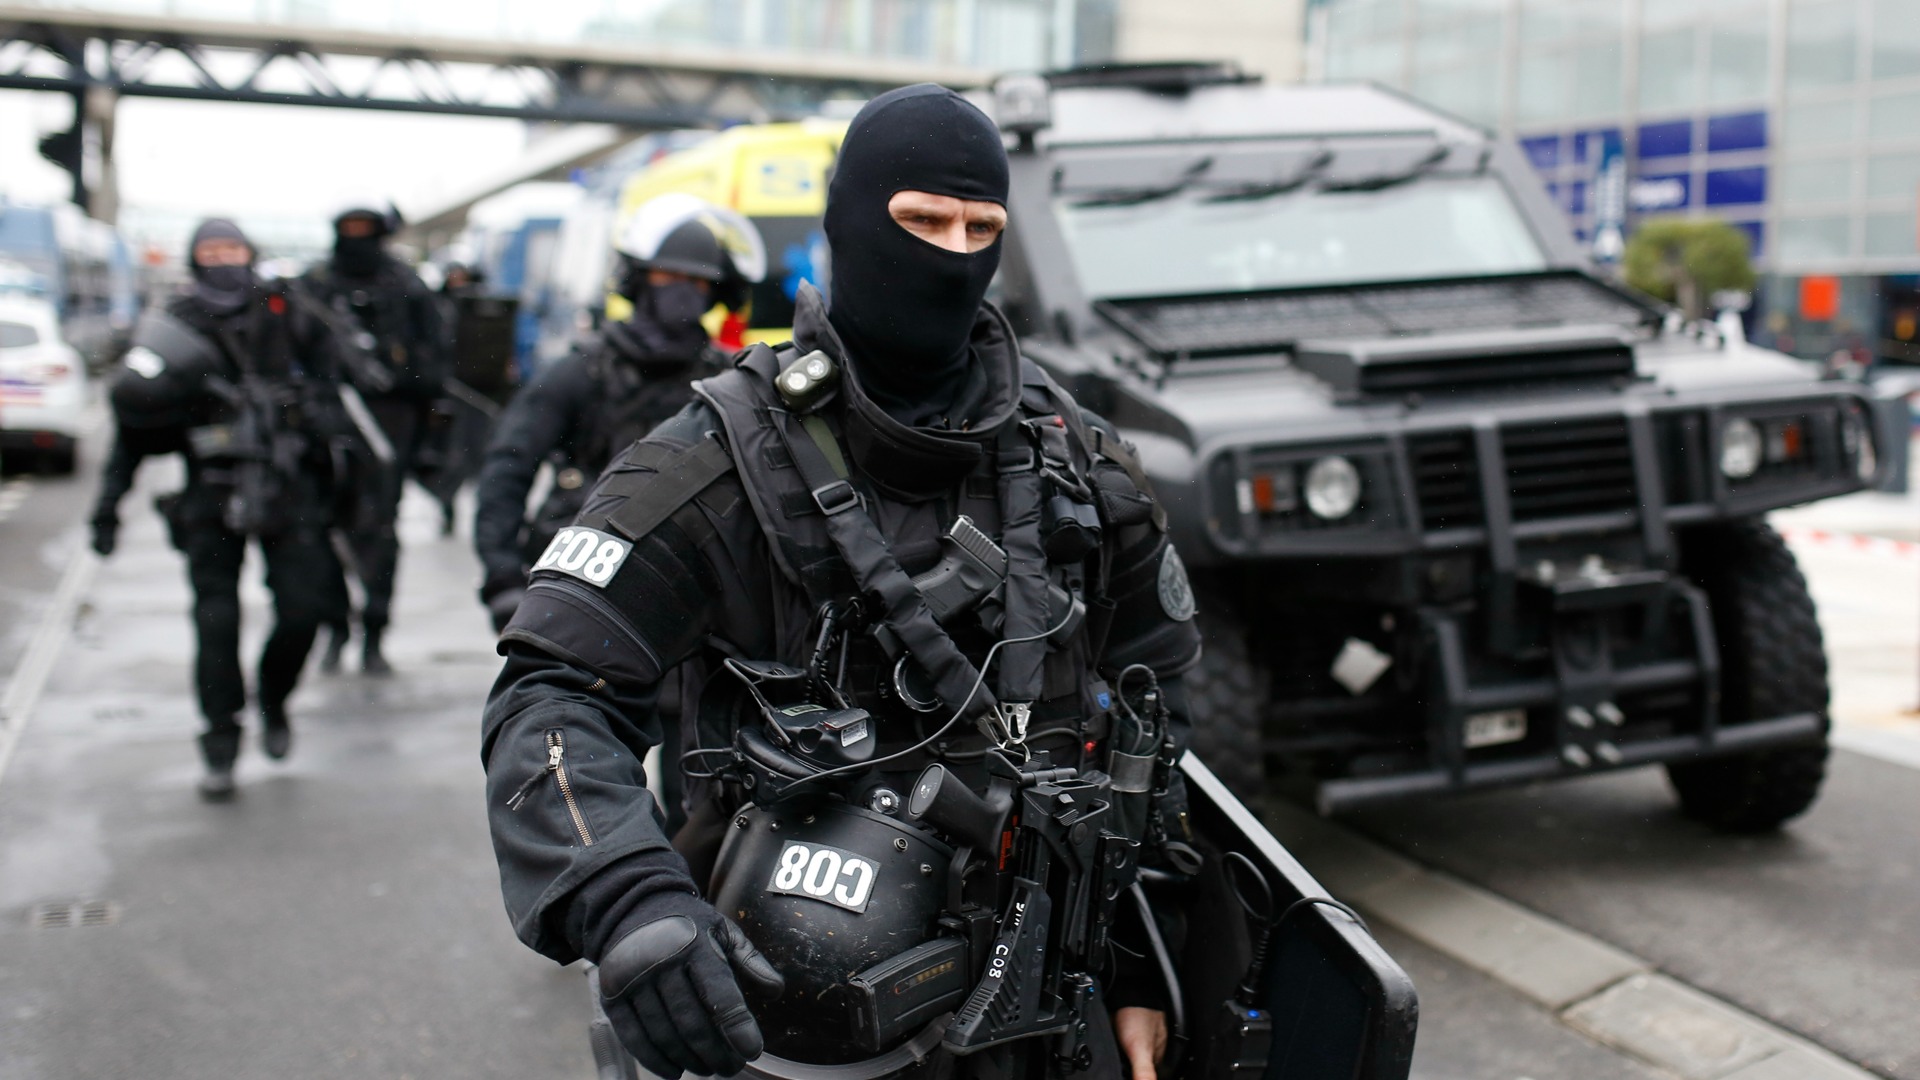 El atacante del aeropuerto parisino de Orly gritó que iba a «morir por Alá»